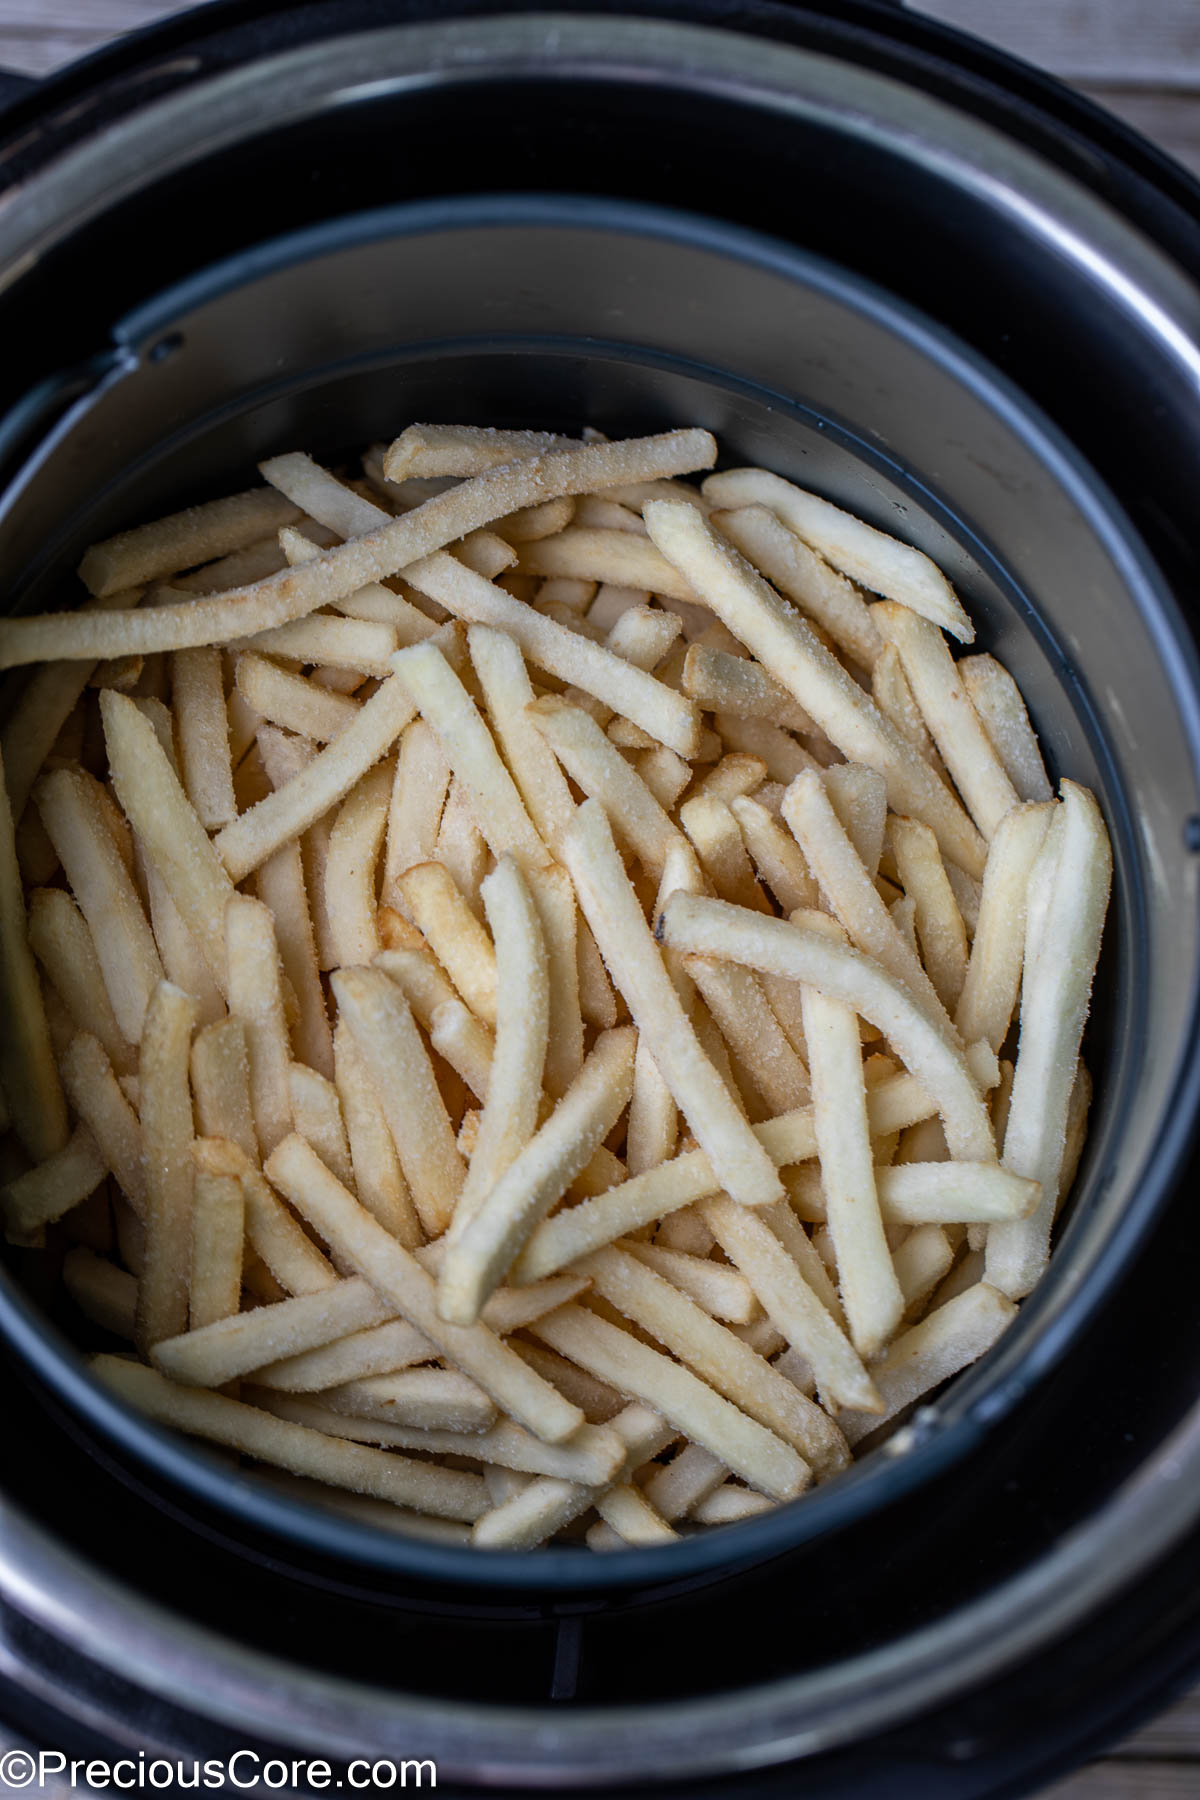 Frozen fries in a round air fryer basket.